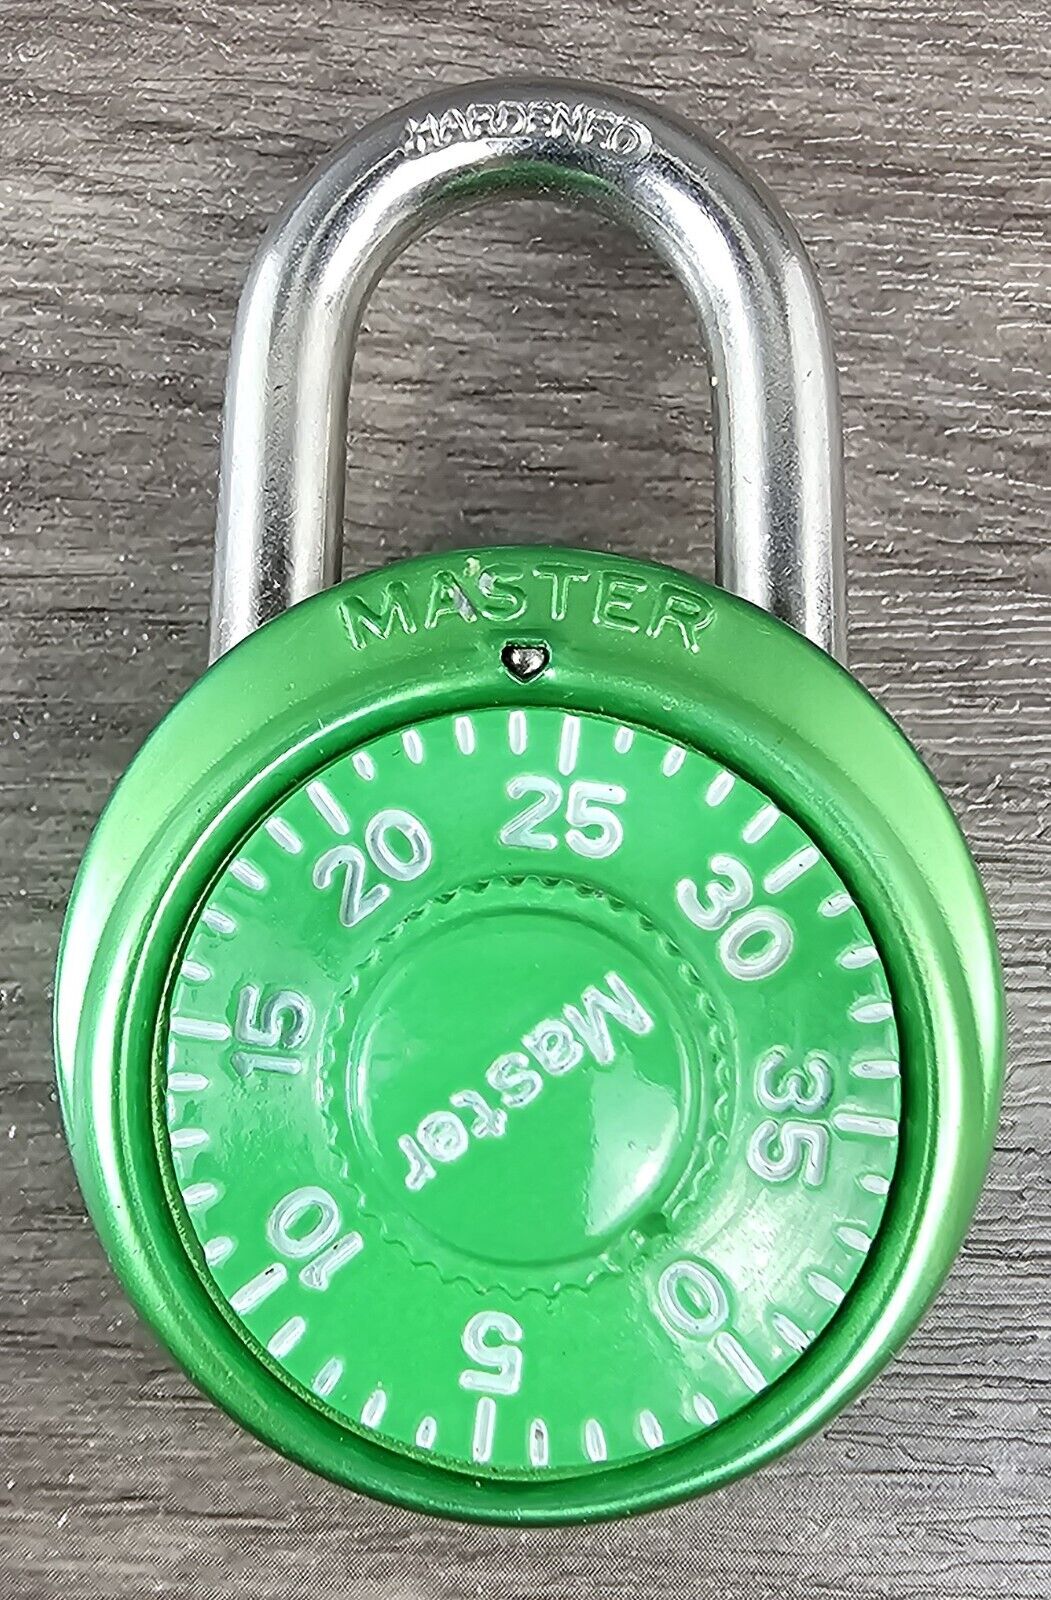 Vintage green Master combination padlock for locker